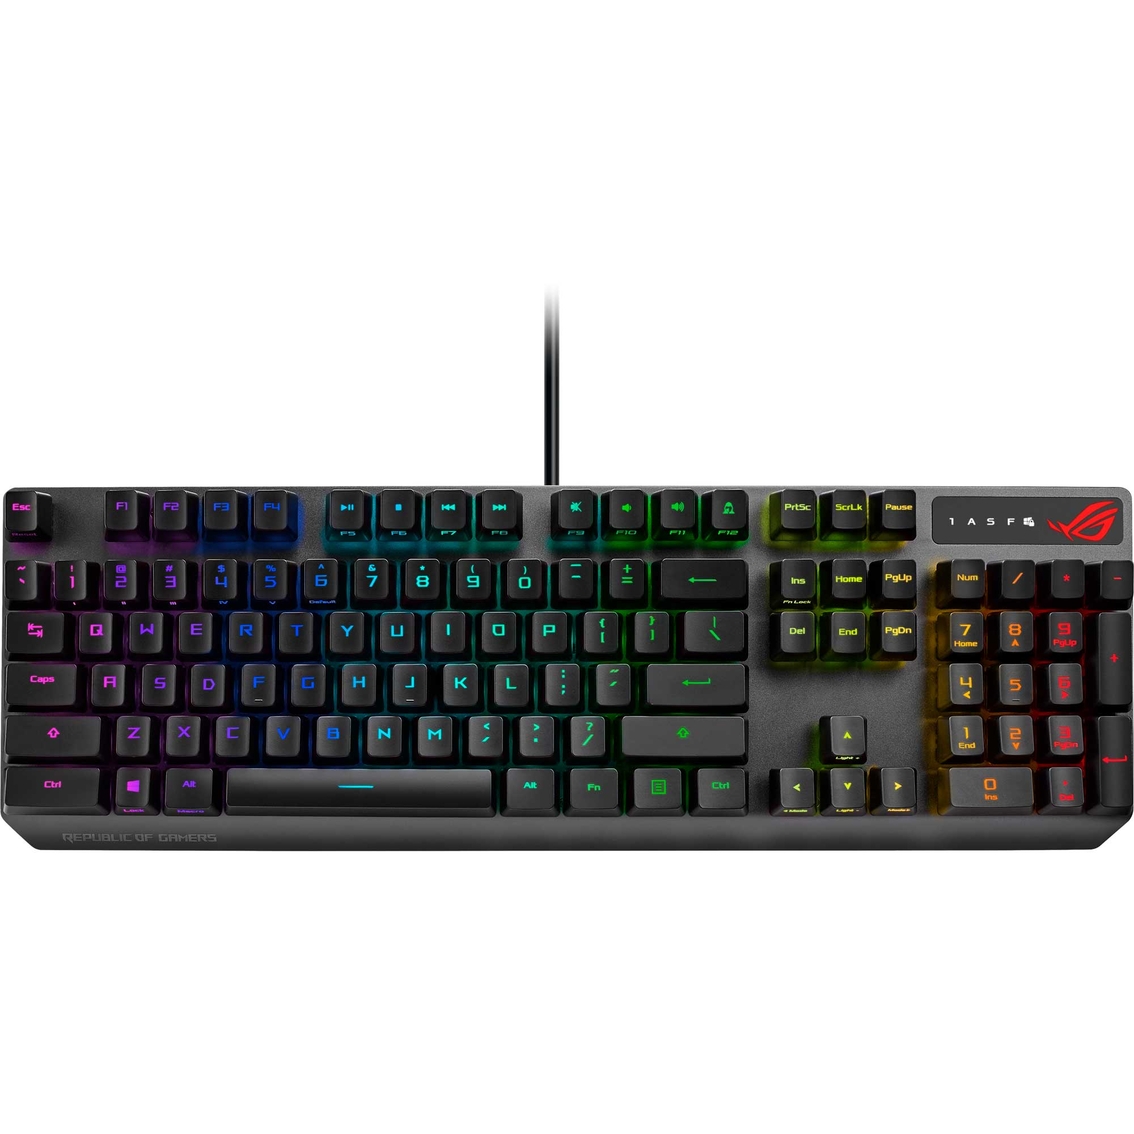 Asus ROG Strix Scope RX Gaming Keyboard - Image 3 of 8